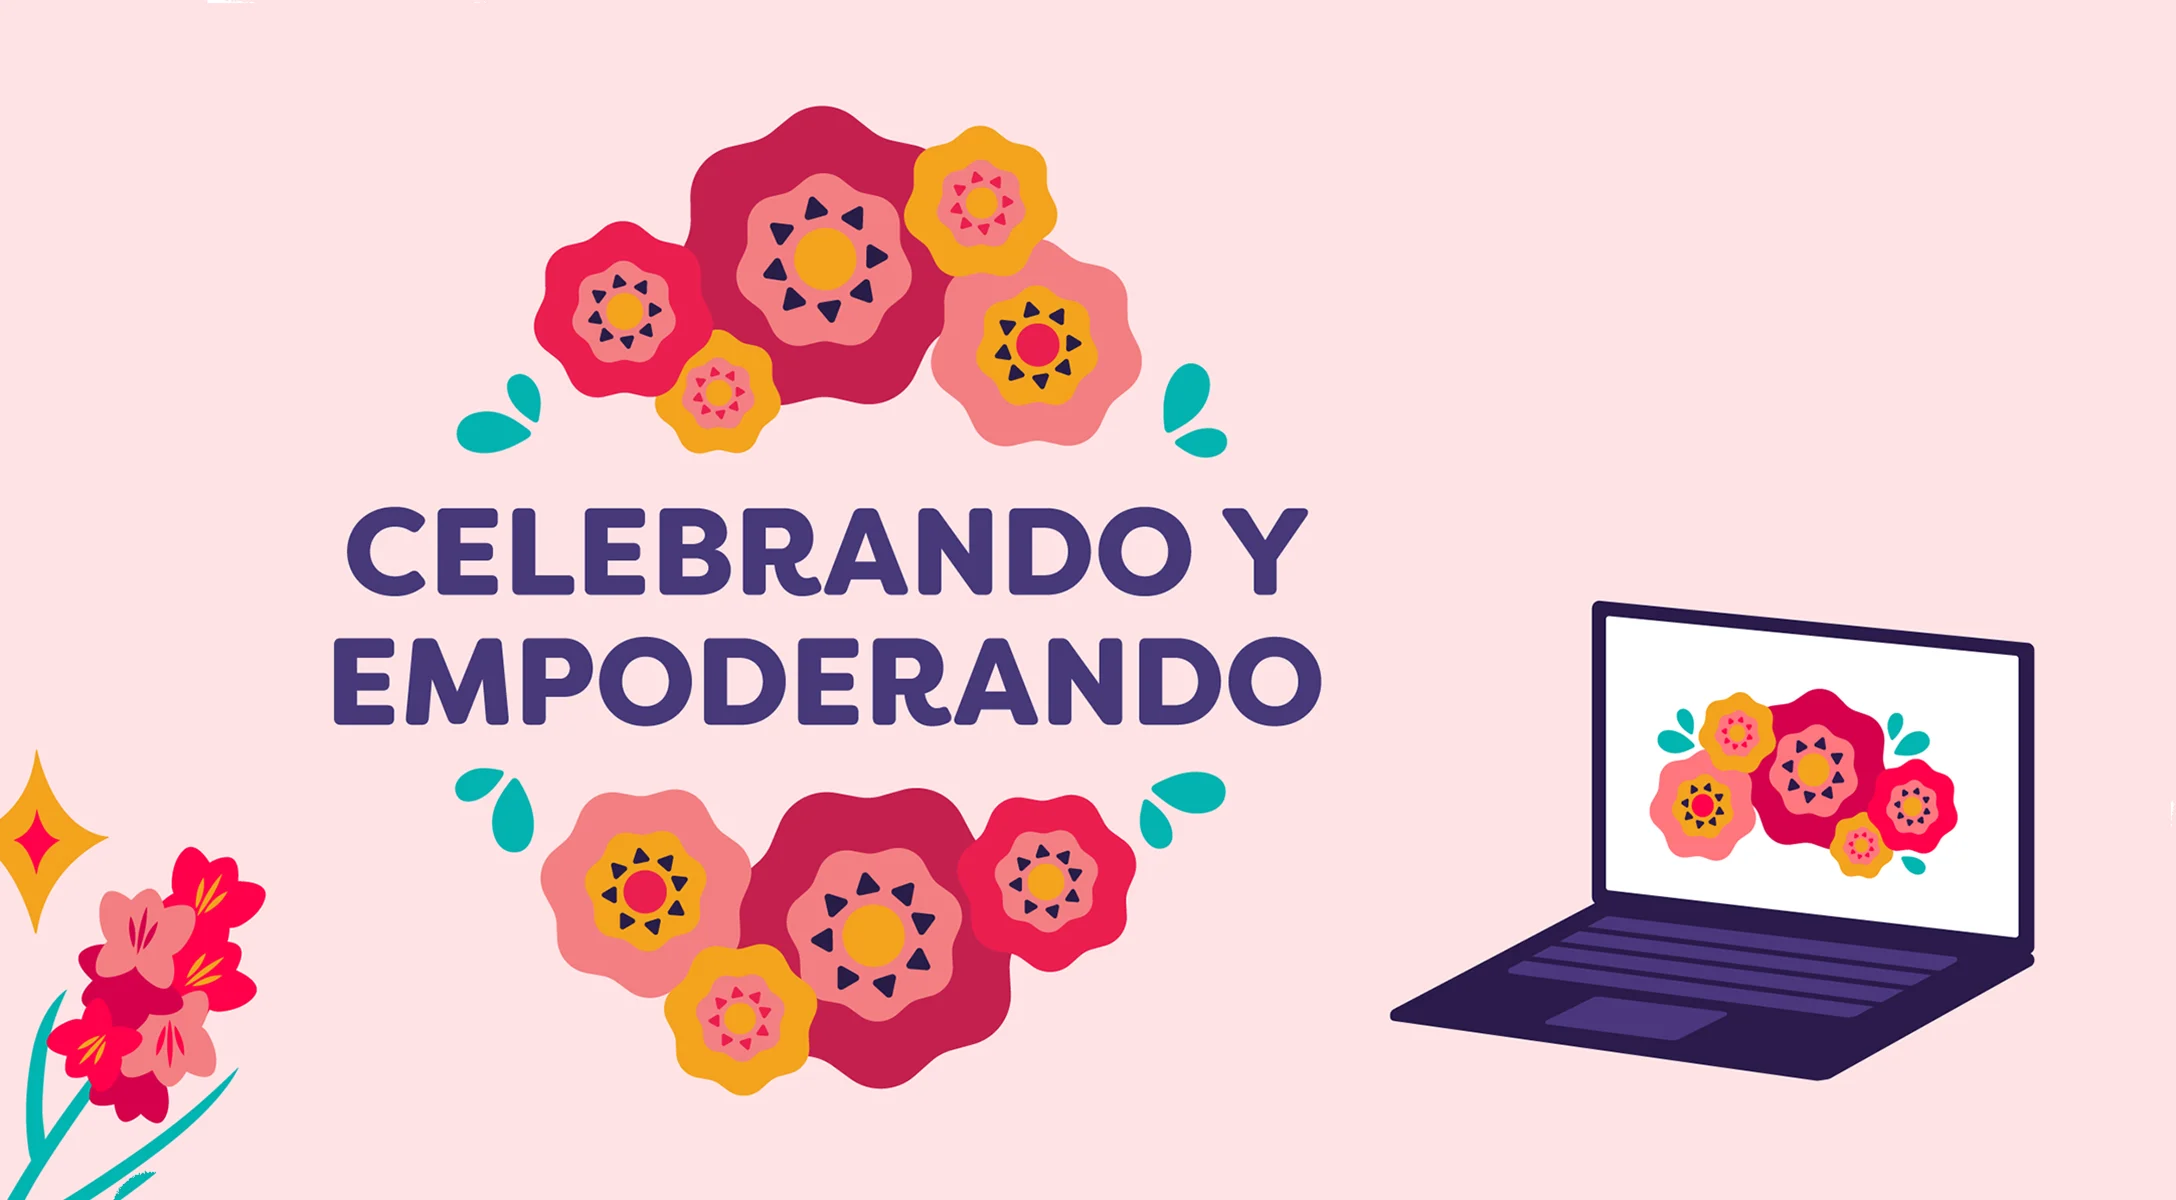 Announcing "Celebrando y Empoderando," a Live Virtual Event for Hispanic Heritage Month